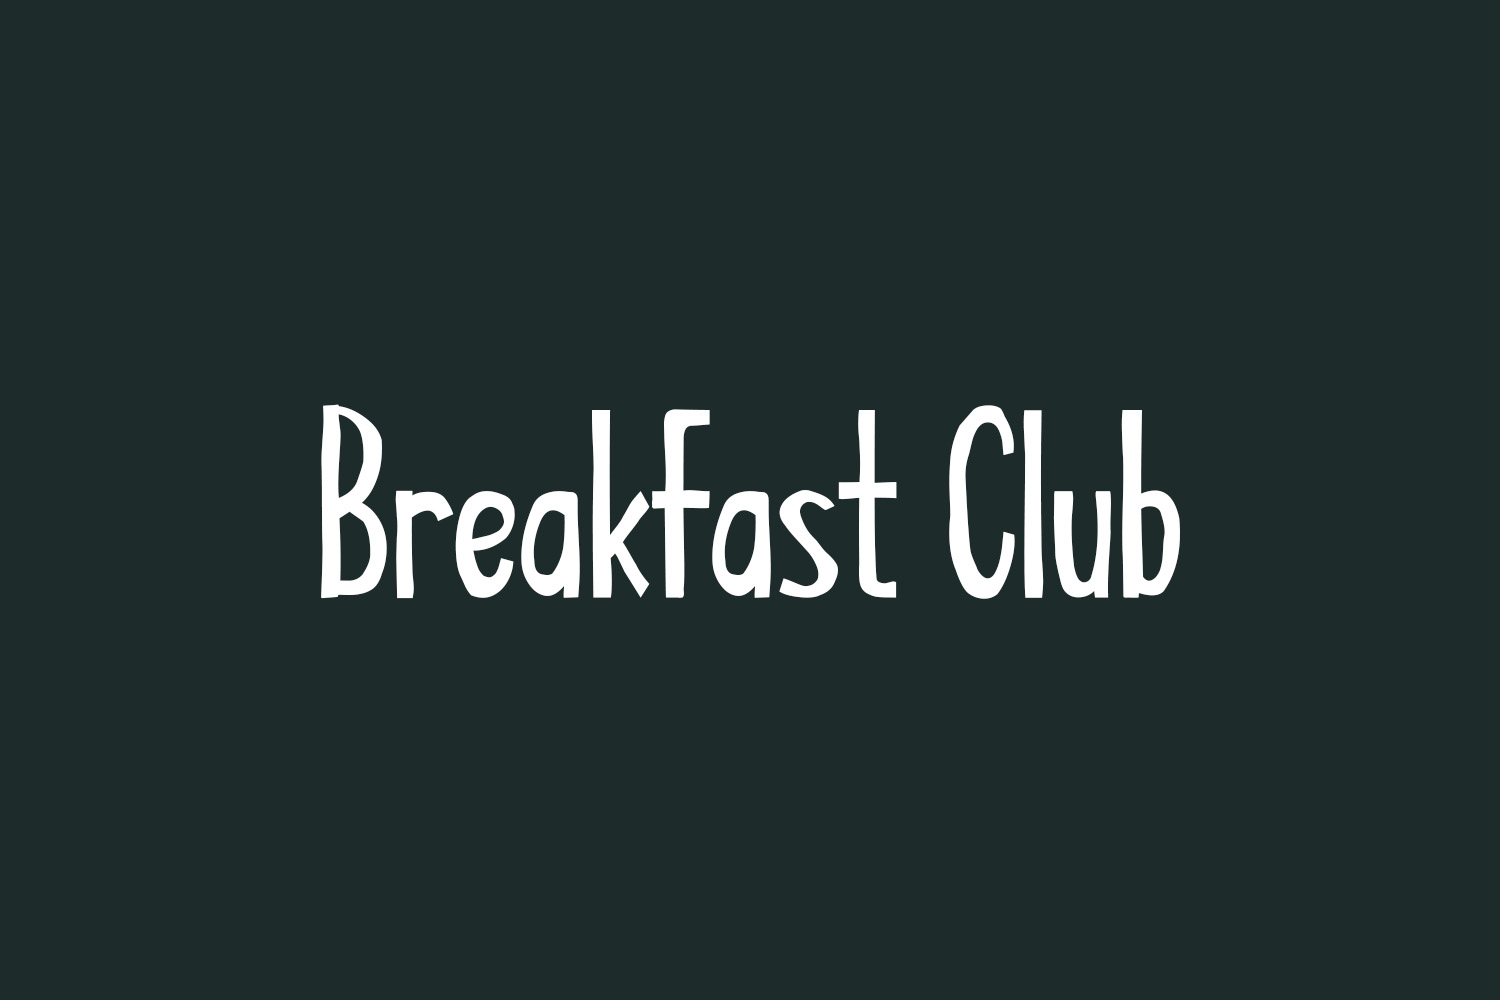 Breakfast Club Free Font